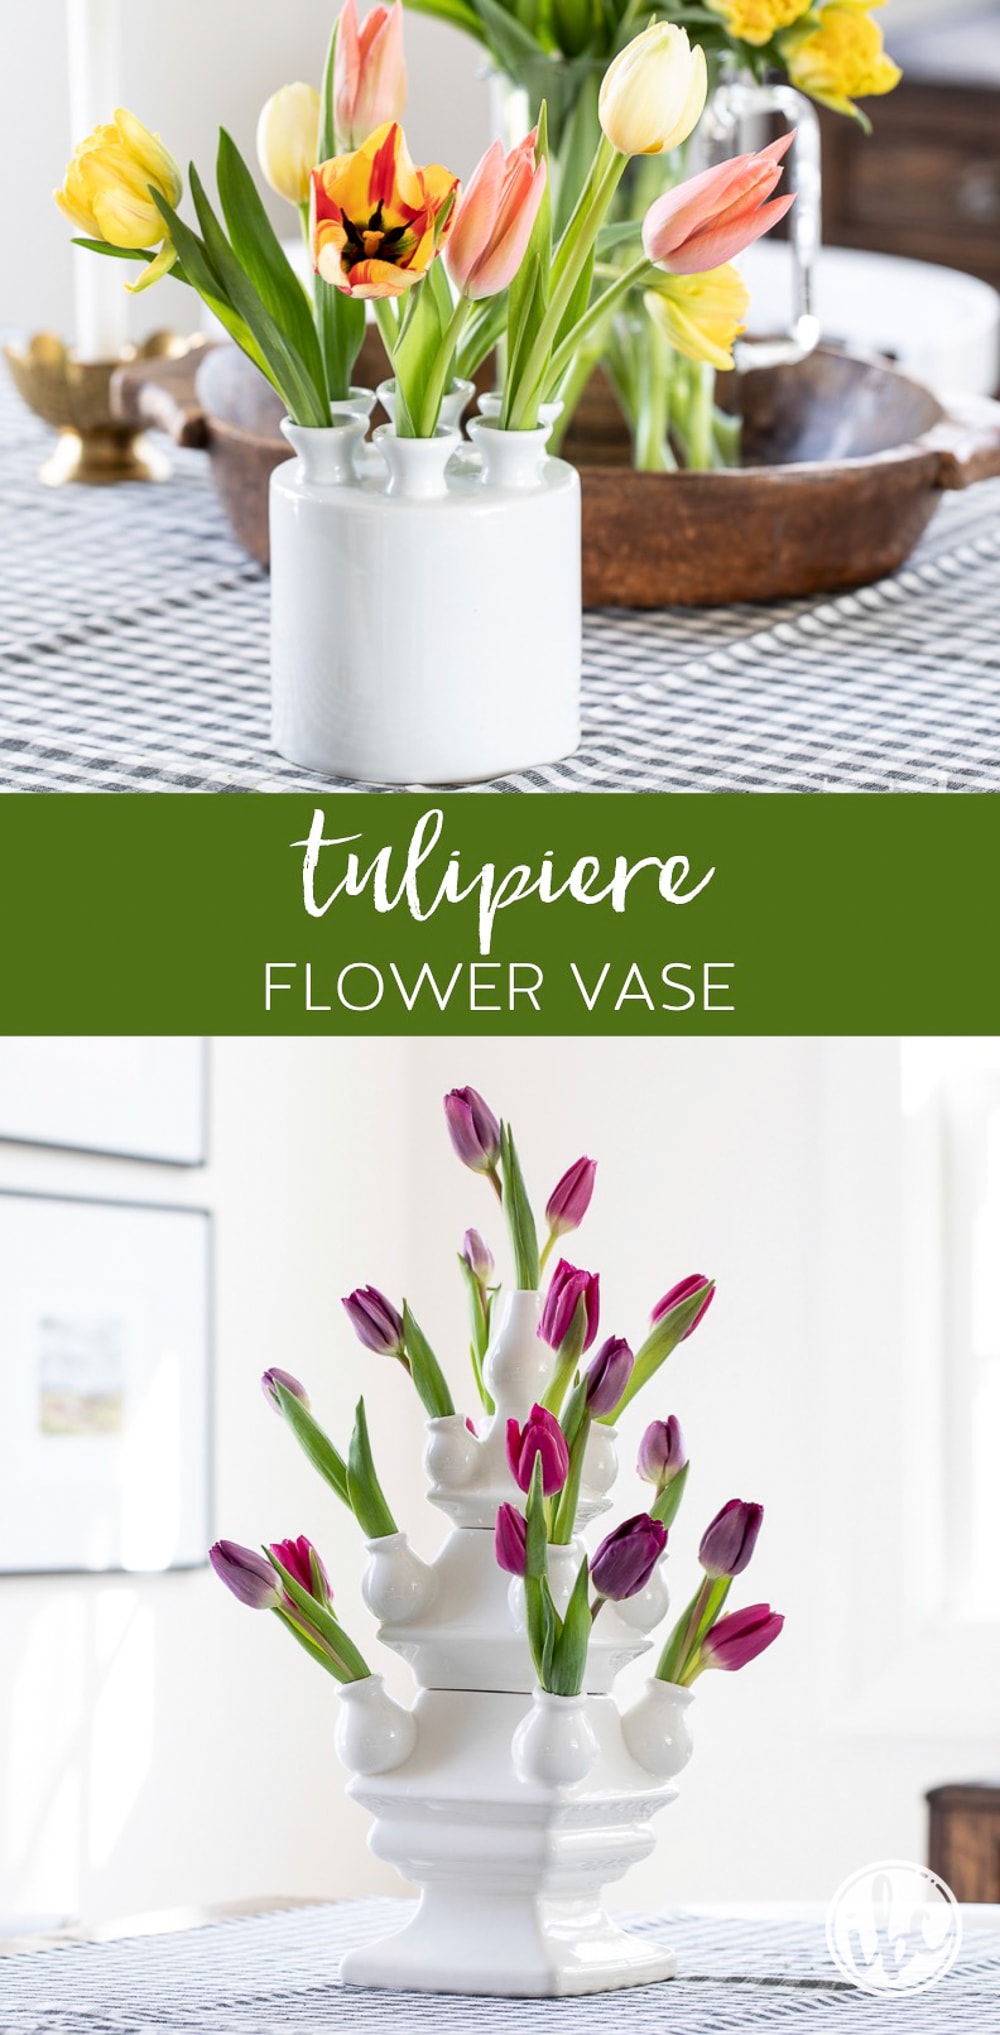 Tulipiere Flower Vase 